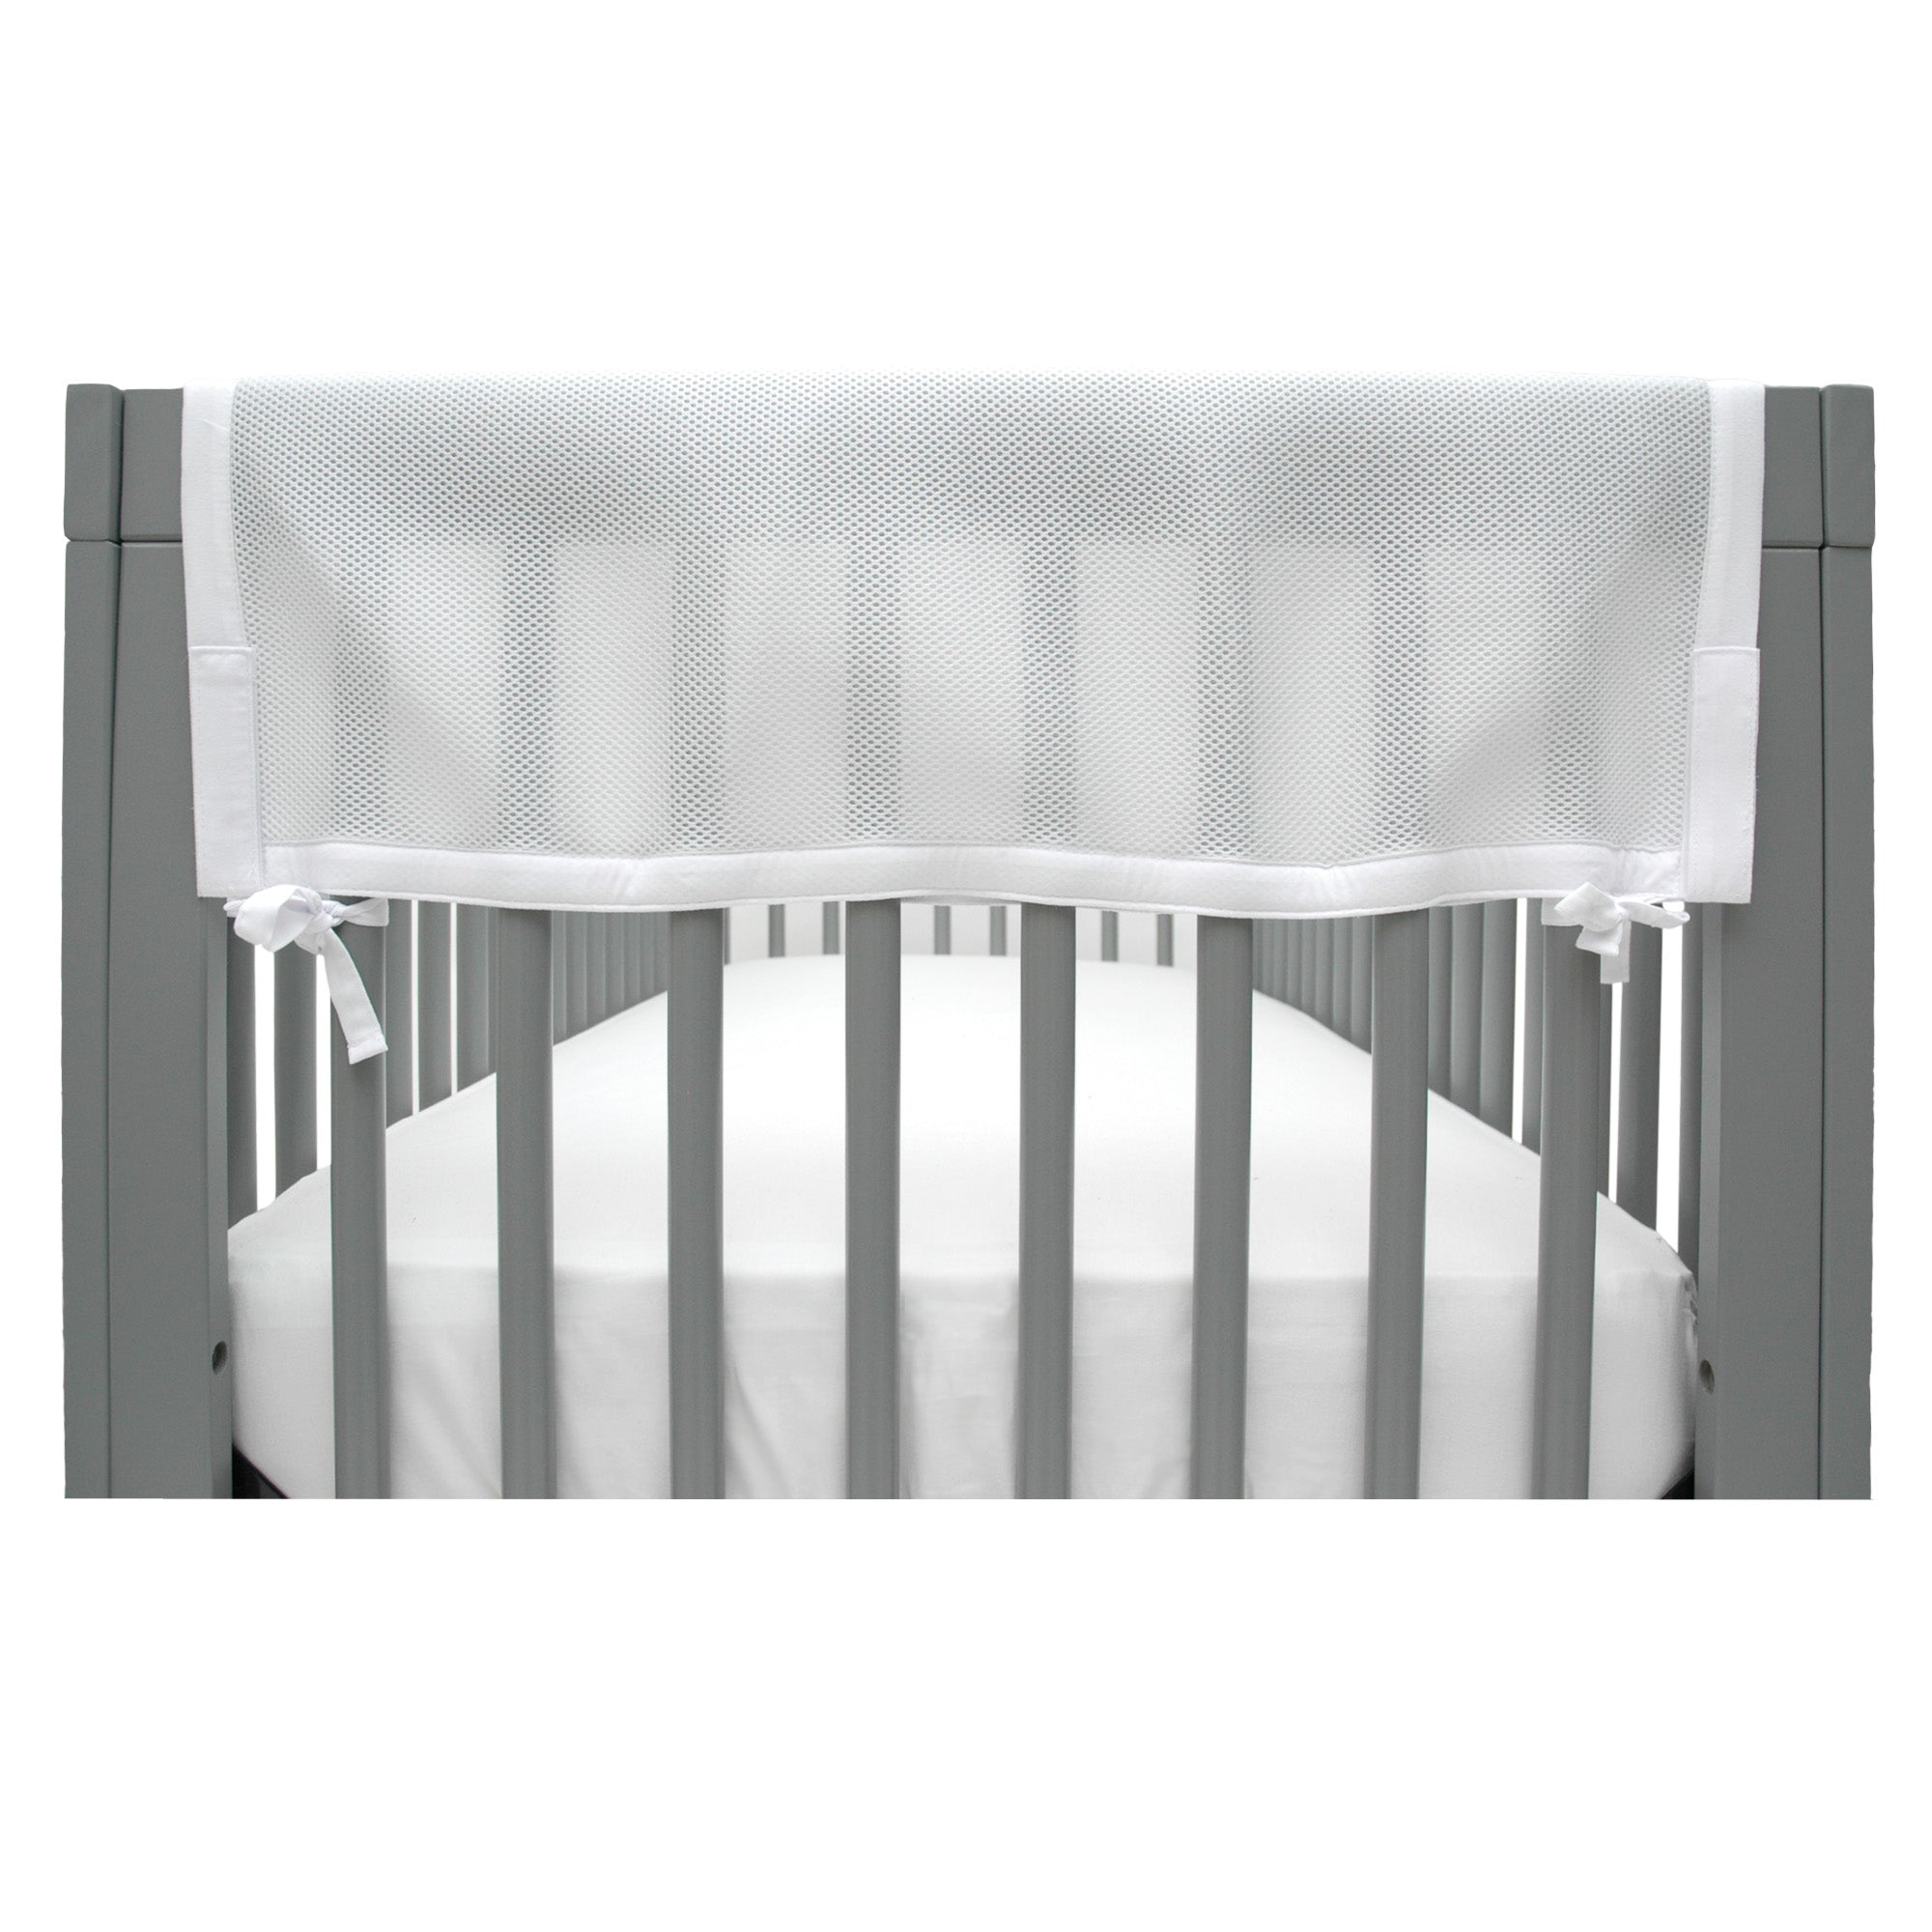 Breathable™ Mesh Crib RailGuard™ Teething Cover, White, 27” Short